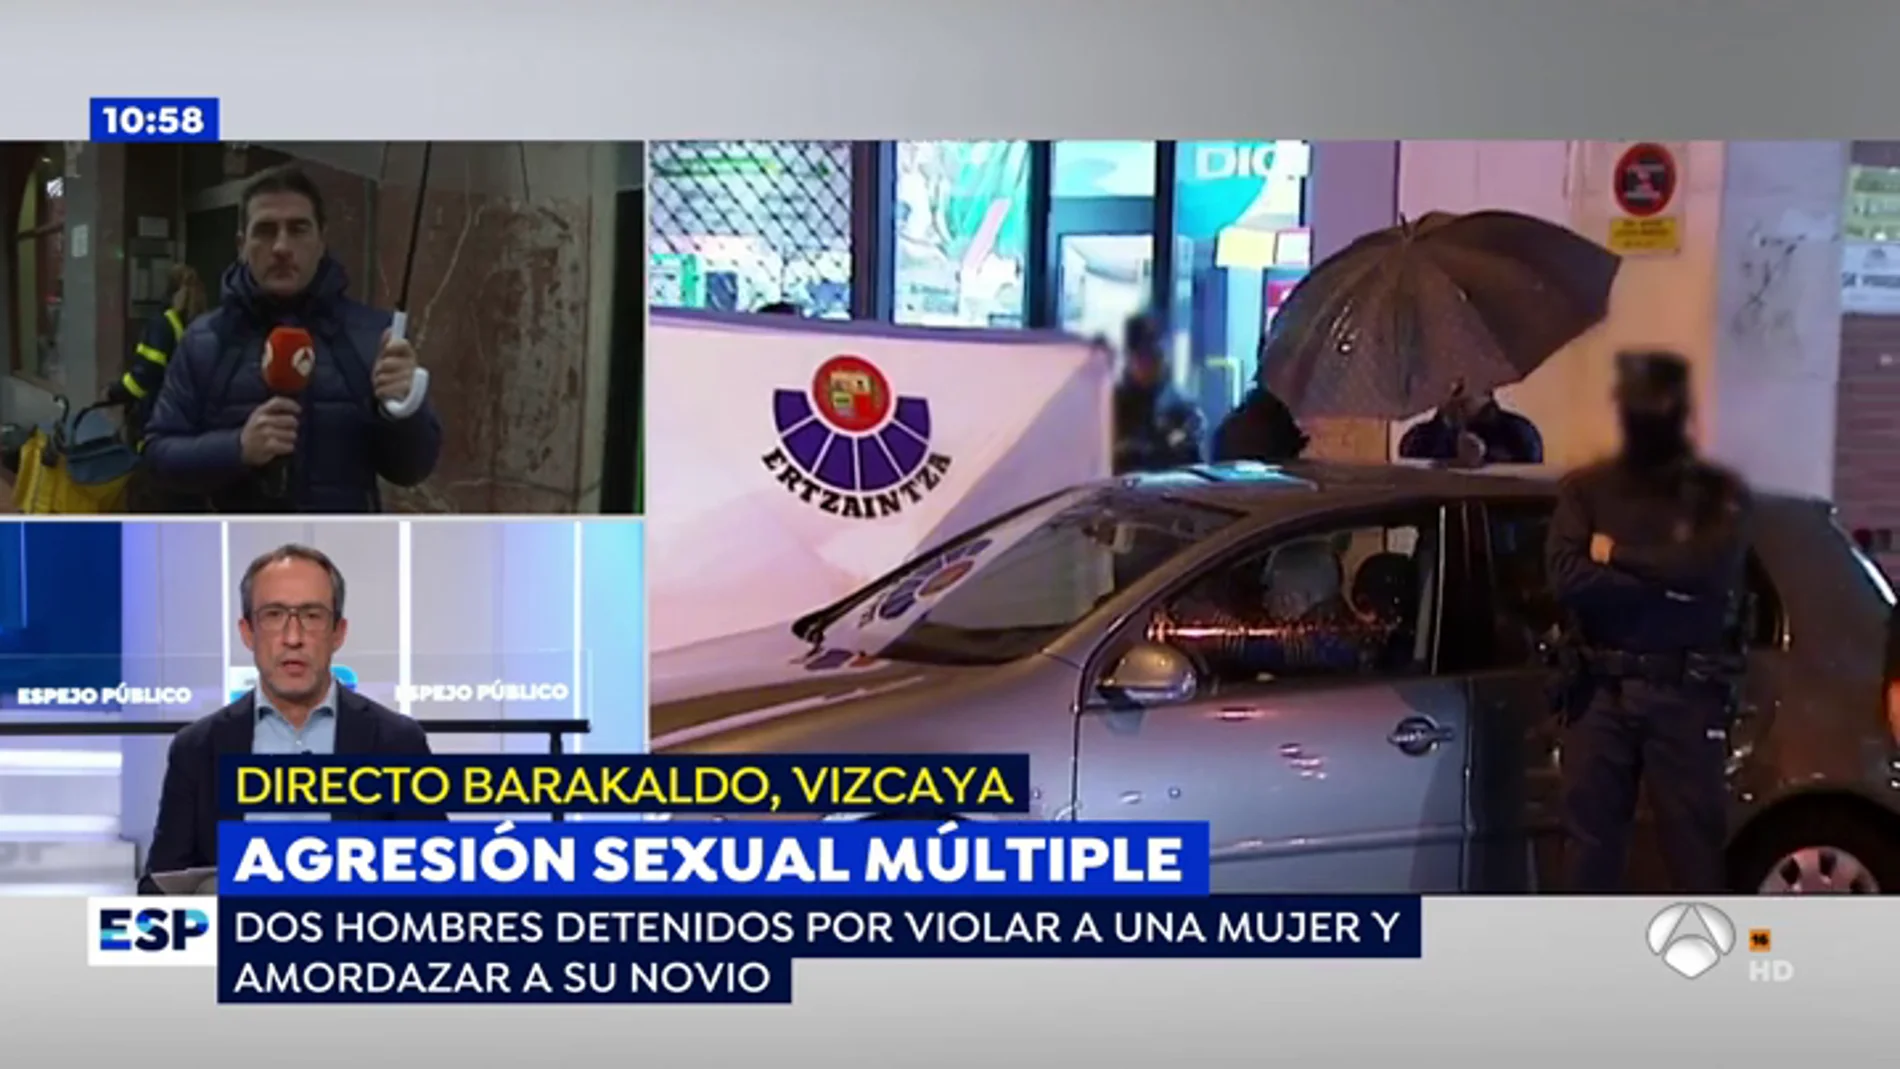 Agresión sexual en grupo en Barakaldo: "La chica intentó salir por la ventana antes de ser violada"